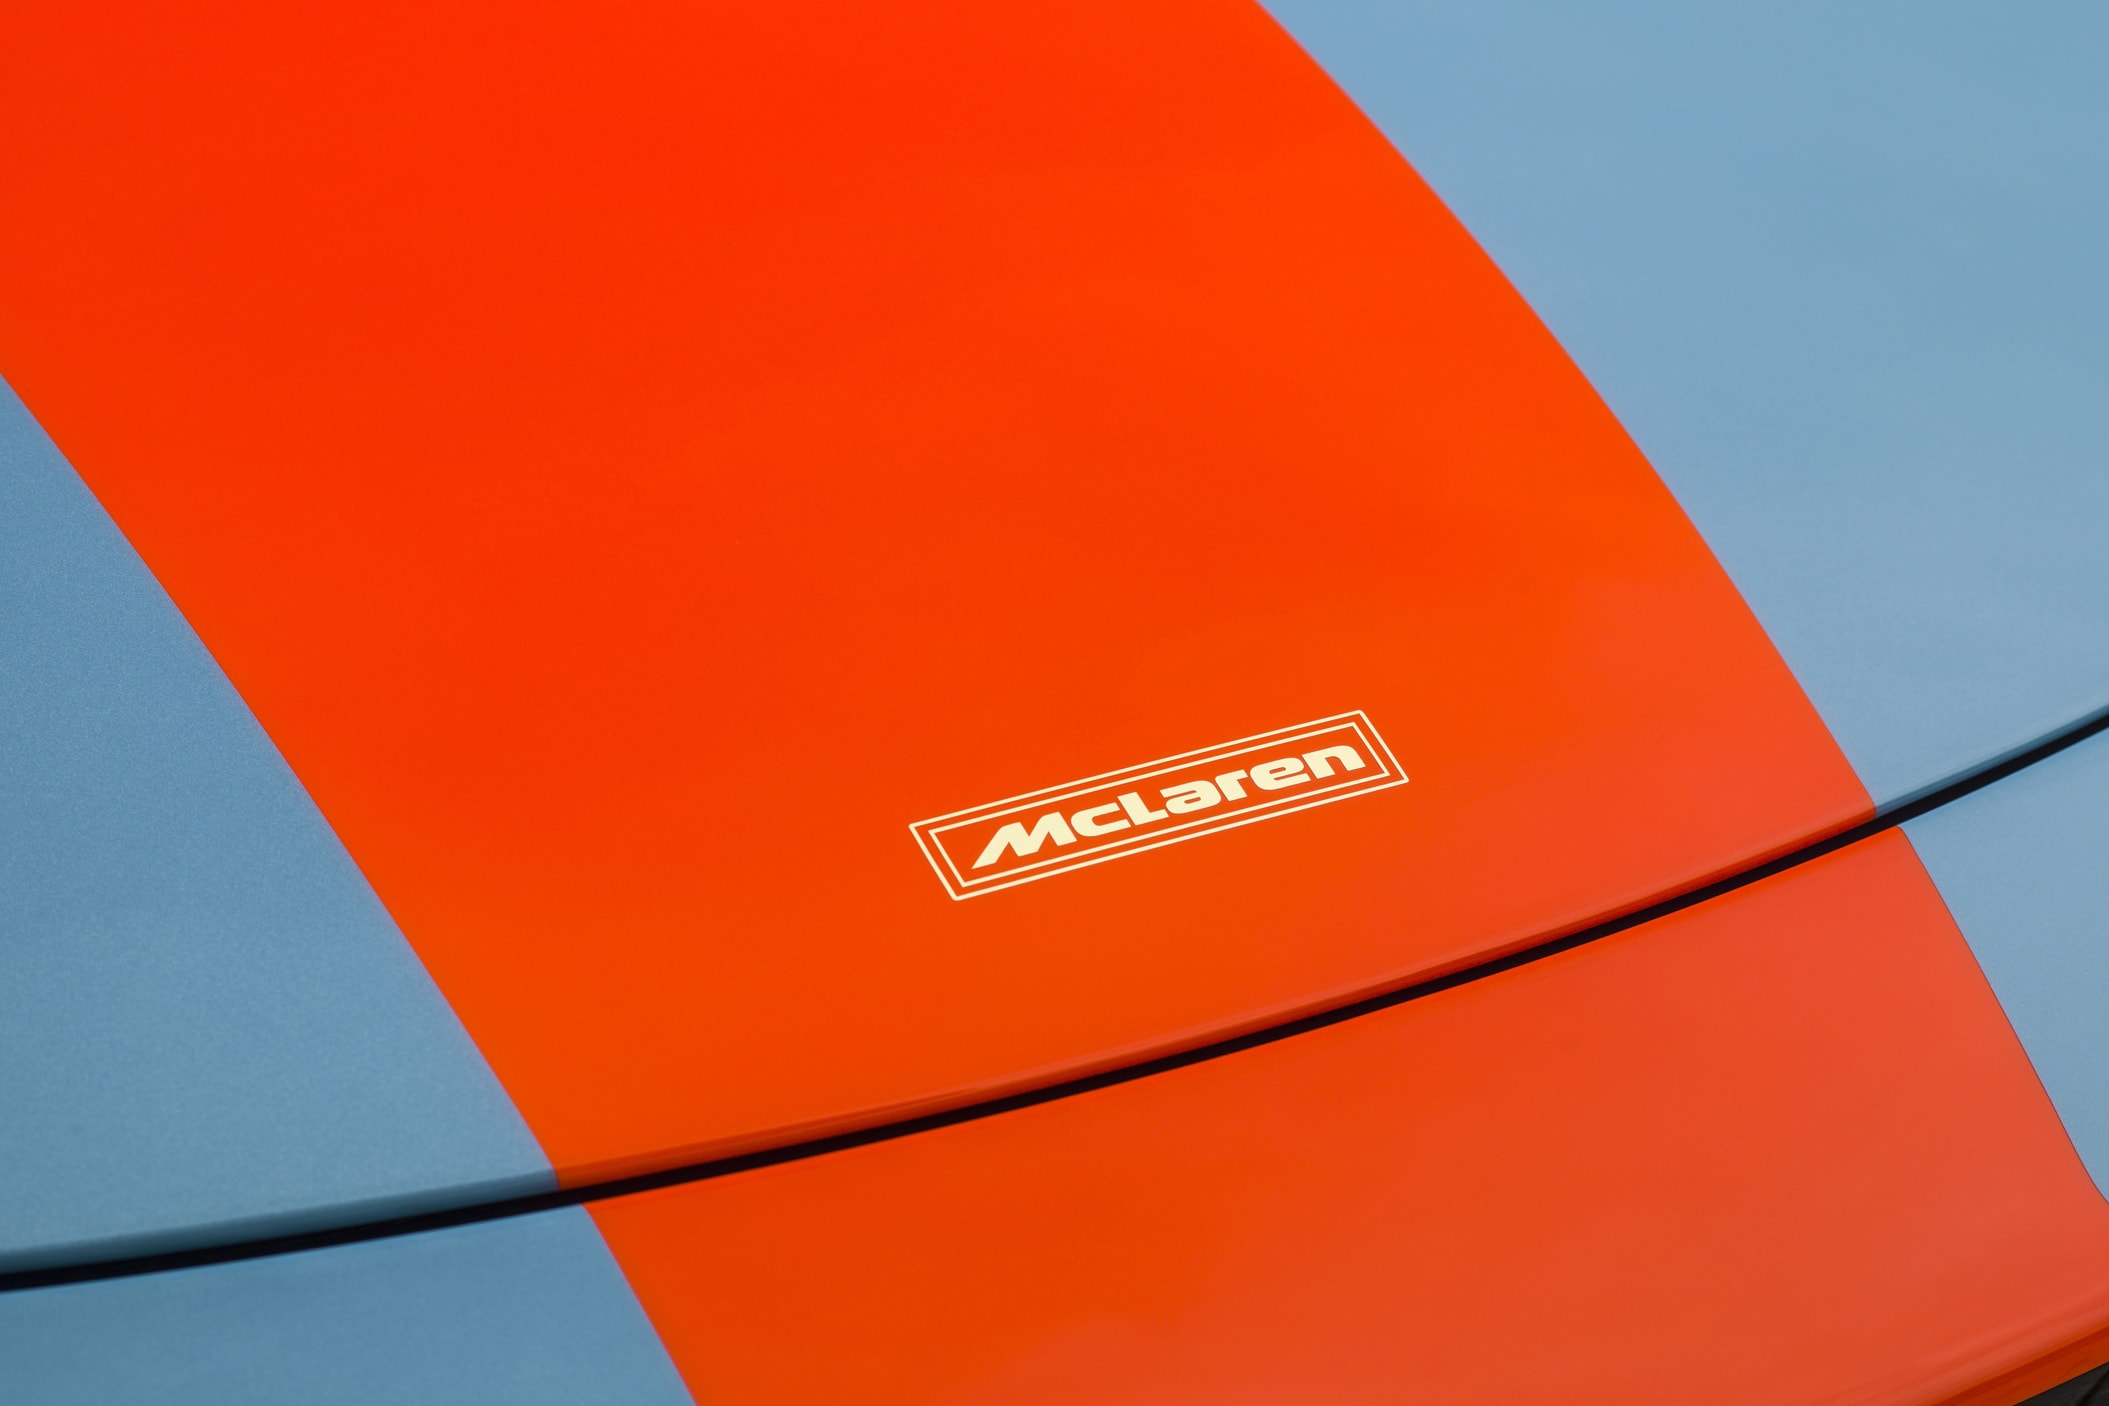 custom McLaren 675LT paintjob lemans livery gulf oil